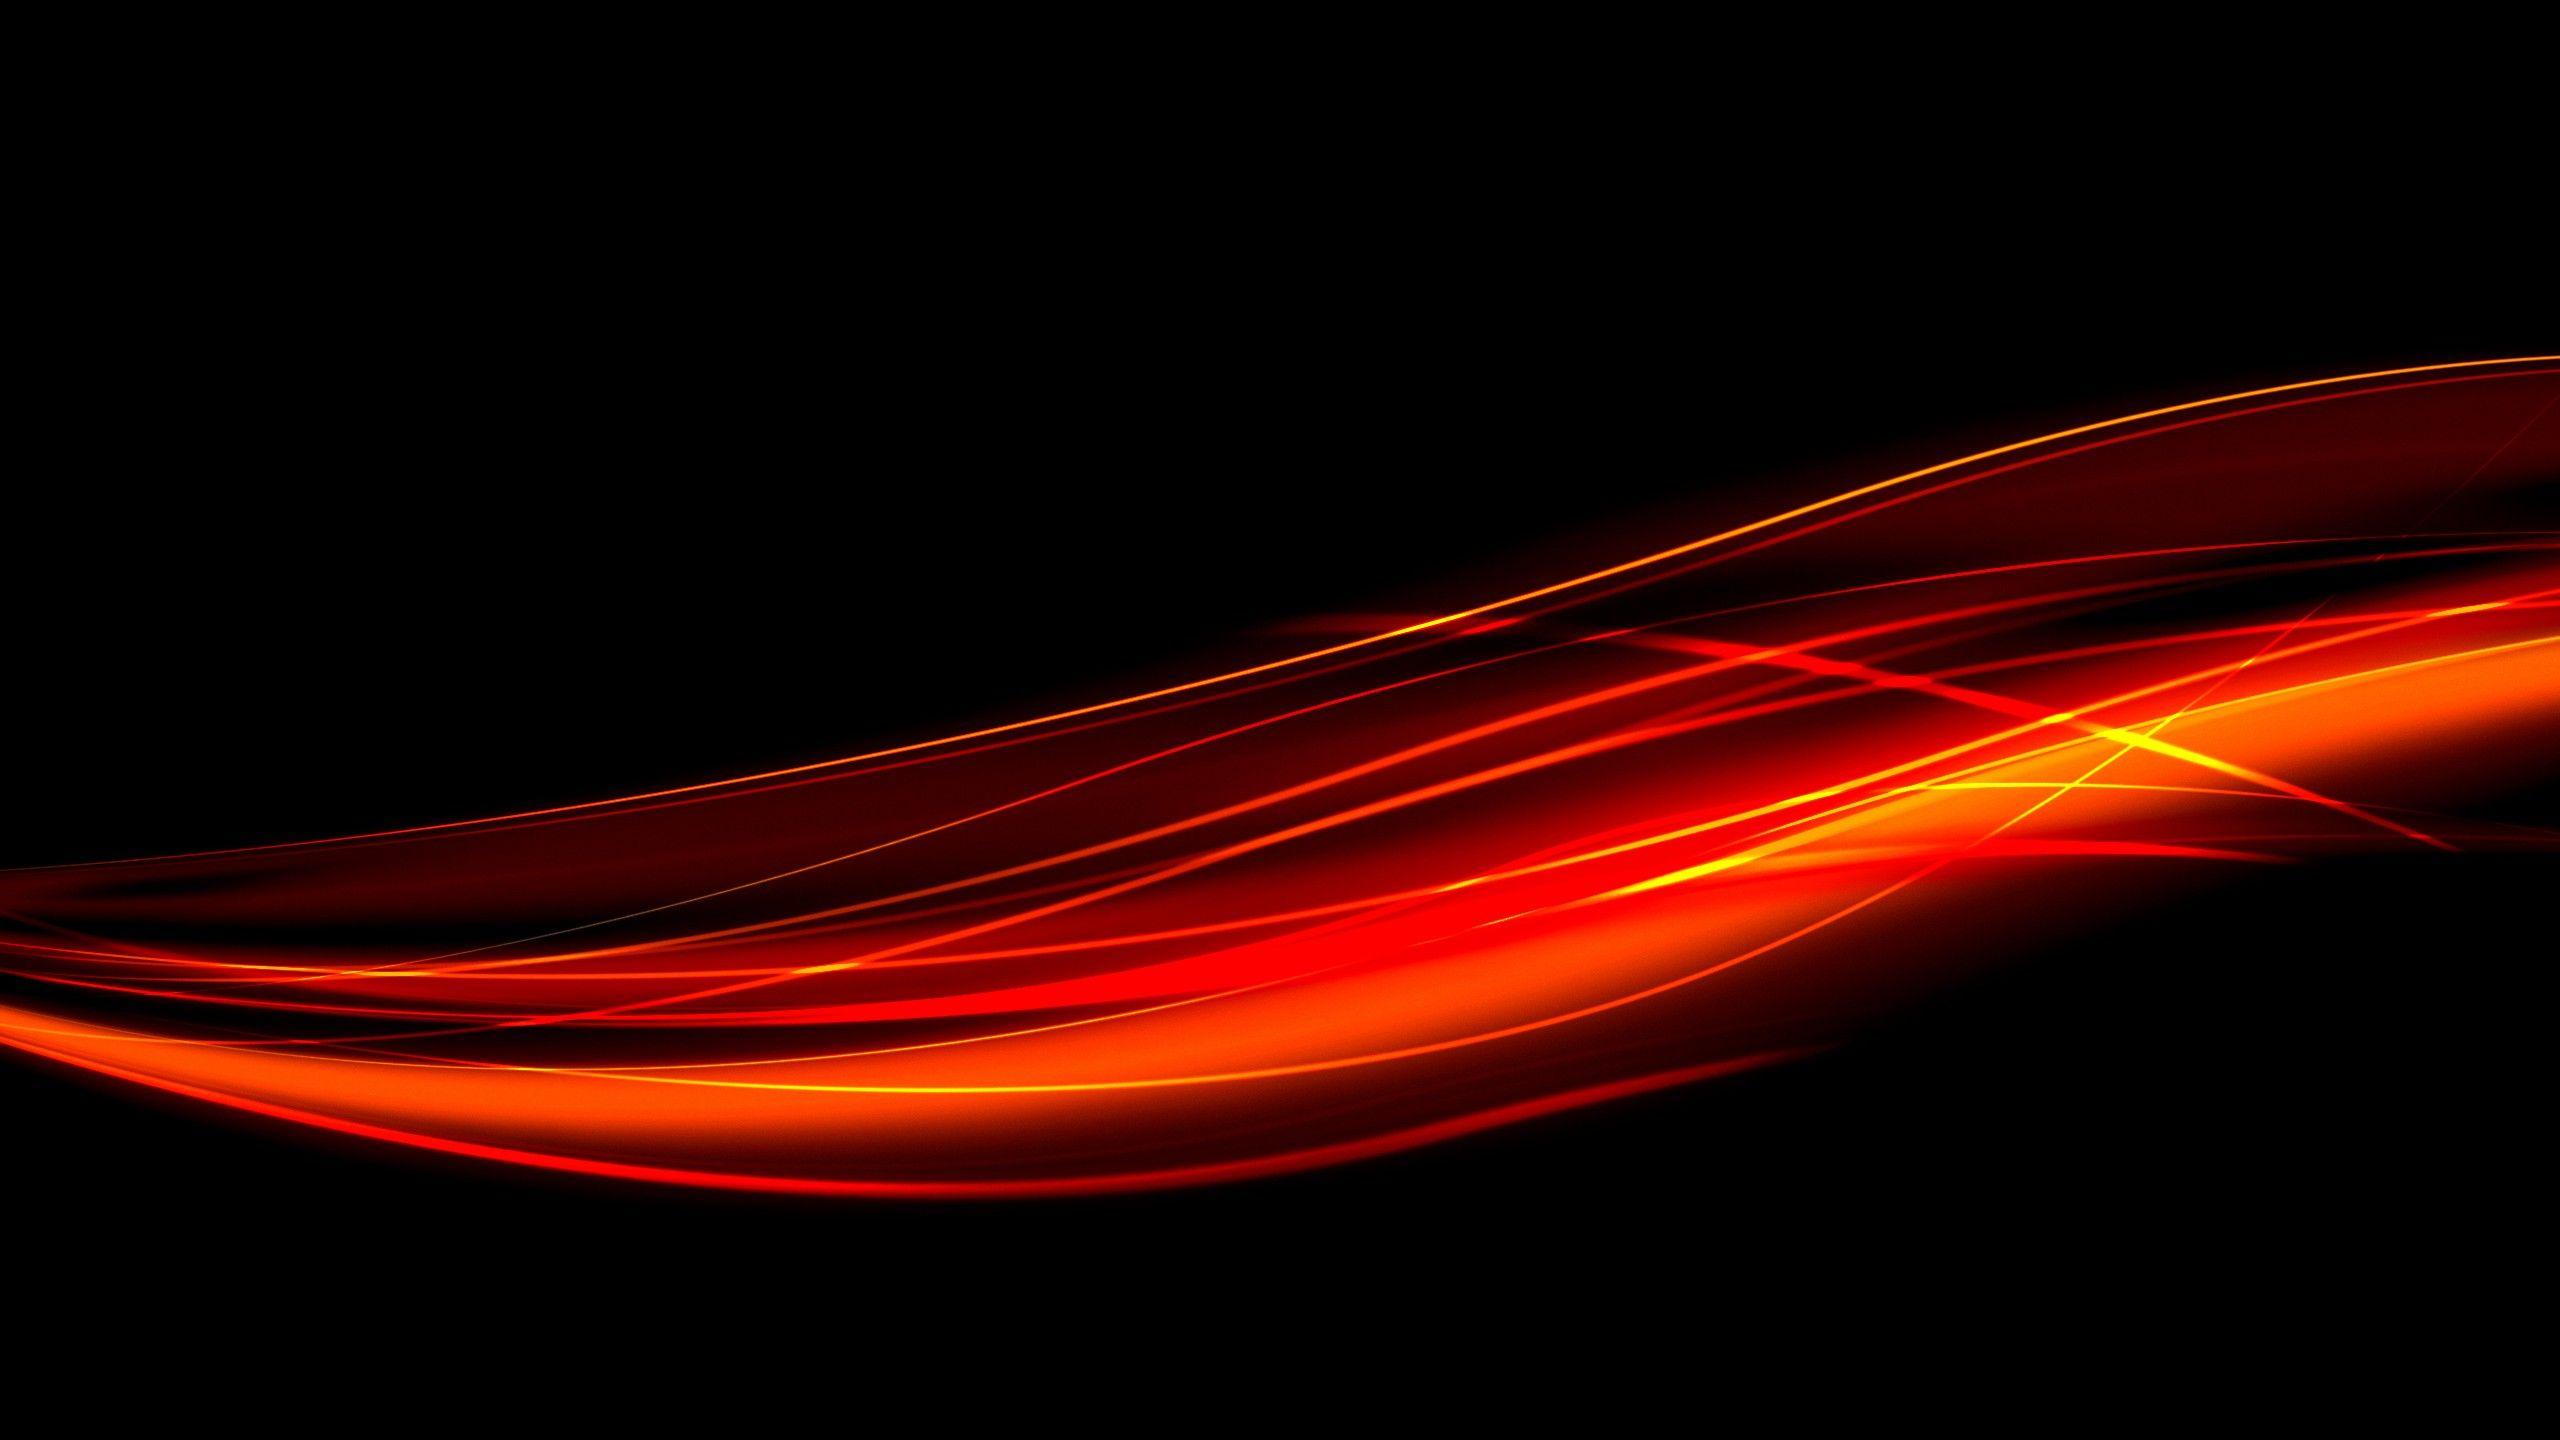 Hình nền màu đỏ và cam làm tăng sự sôi động và nóng bỏng cho máy tính của bạn. Với gam màu tươi sáng, hình nền này chắc chắn sẽ làm bạn không bao giờ chán và cảm thấy phấn khích.